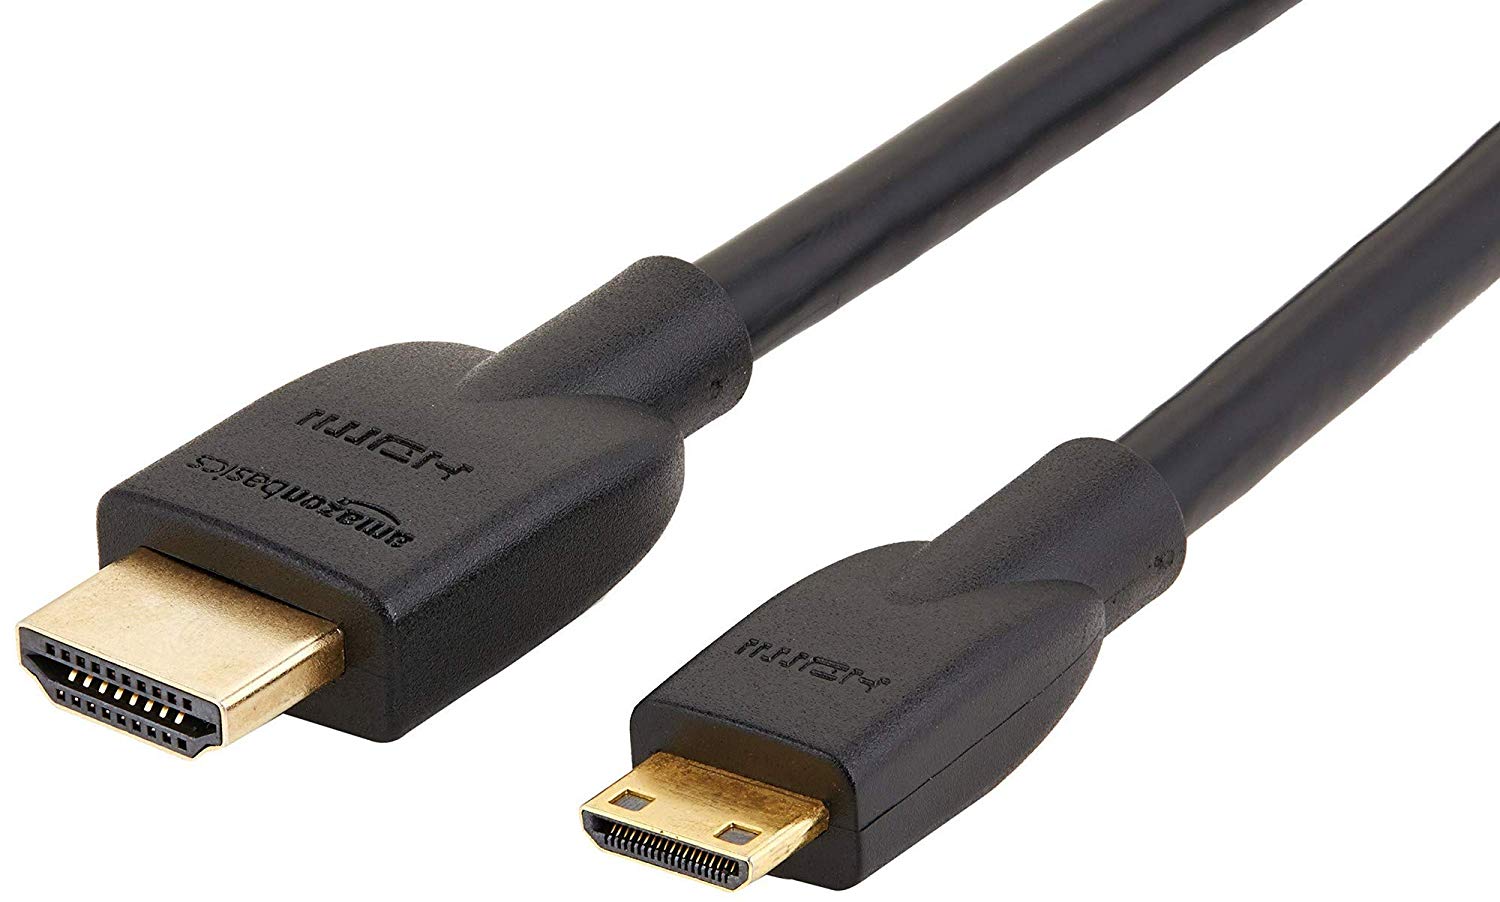 Mini HDMI cable